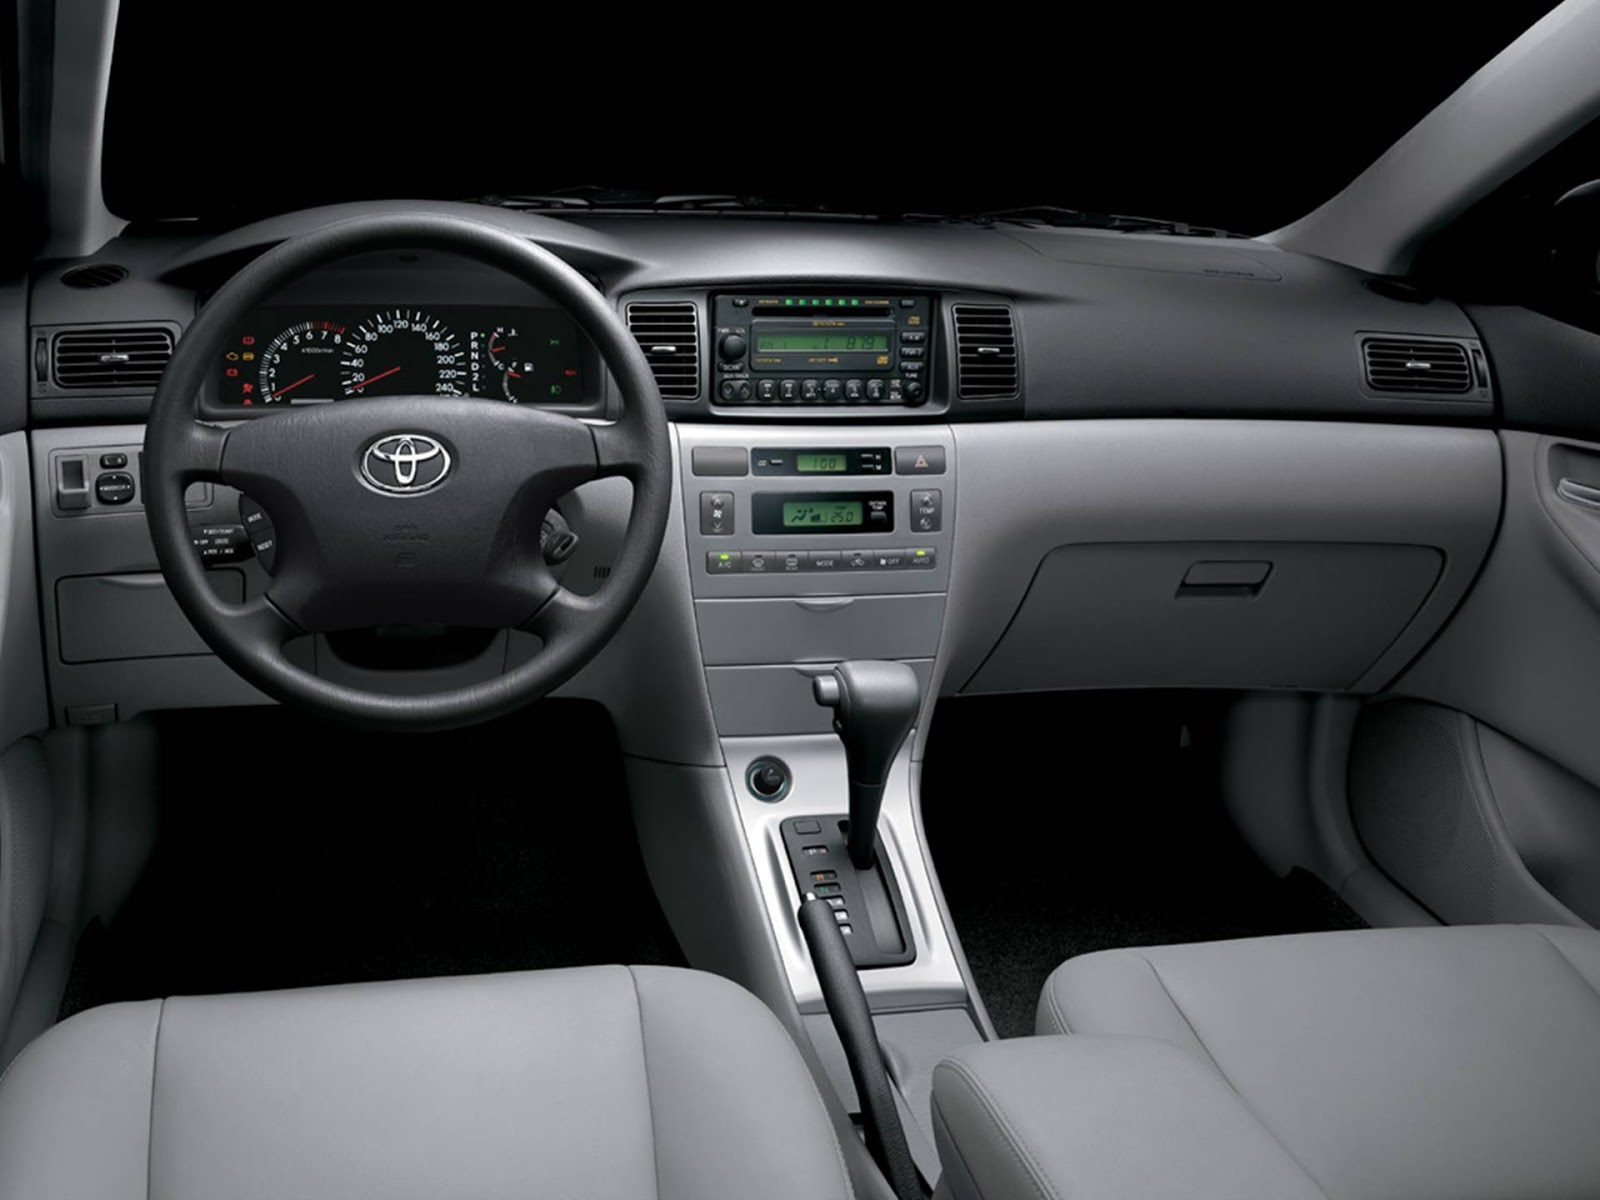 Mua Bán Xe Toyota Corolla Altis 2003 Giá Rẻ Toàn quốc